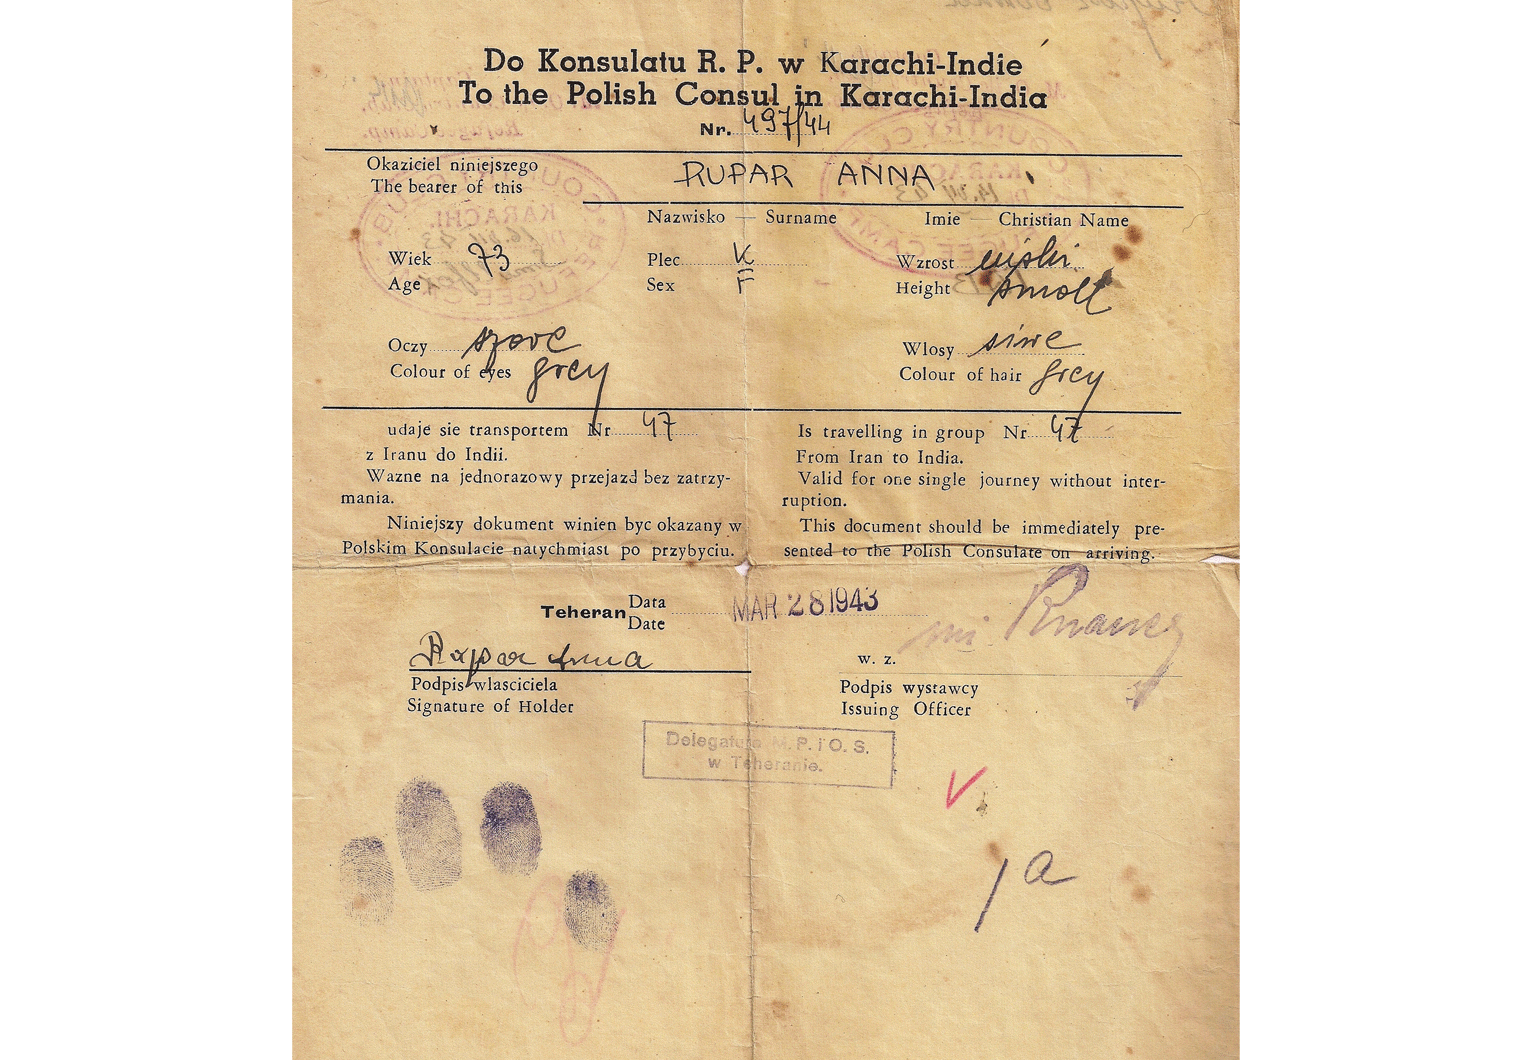 WW2 refugee passport from Tehran